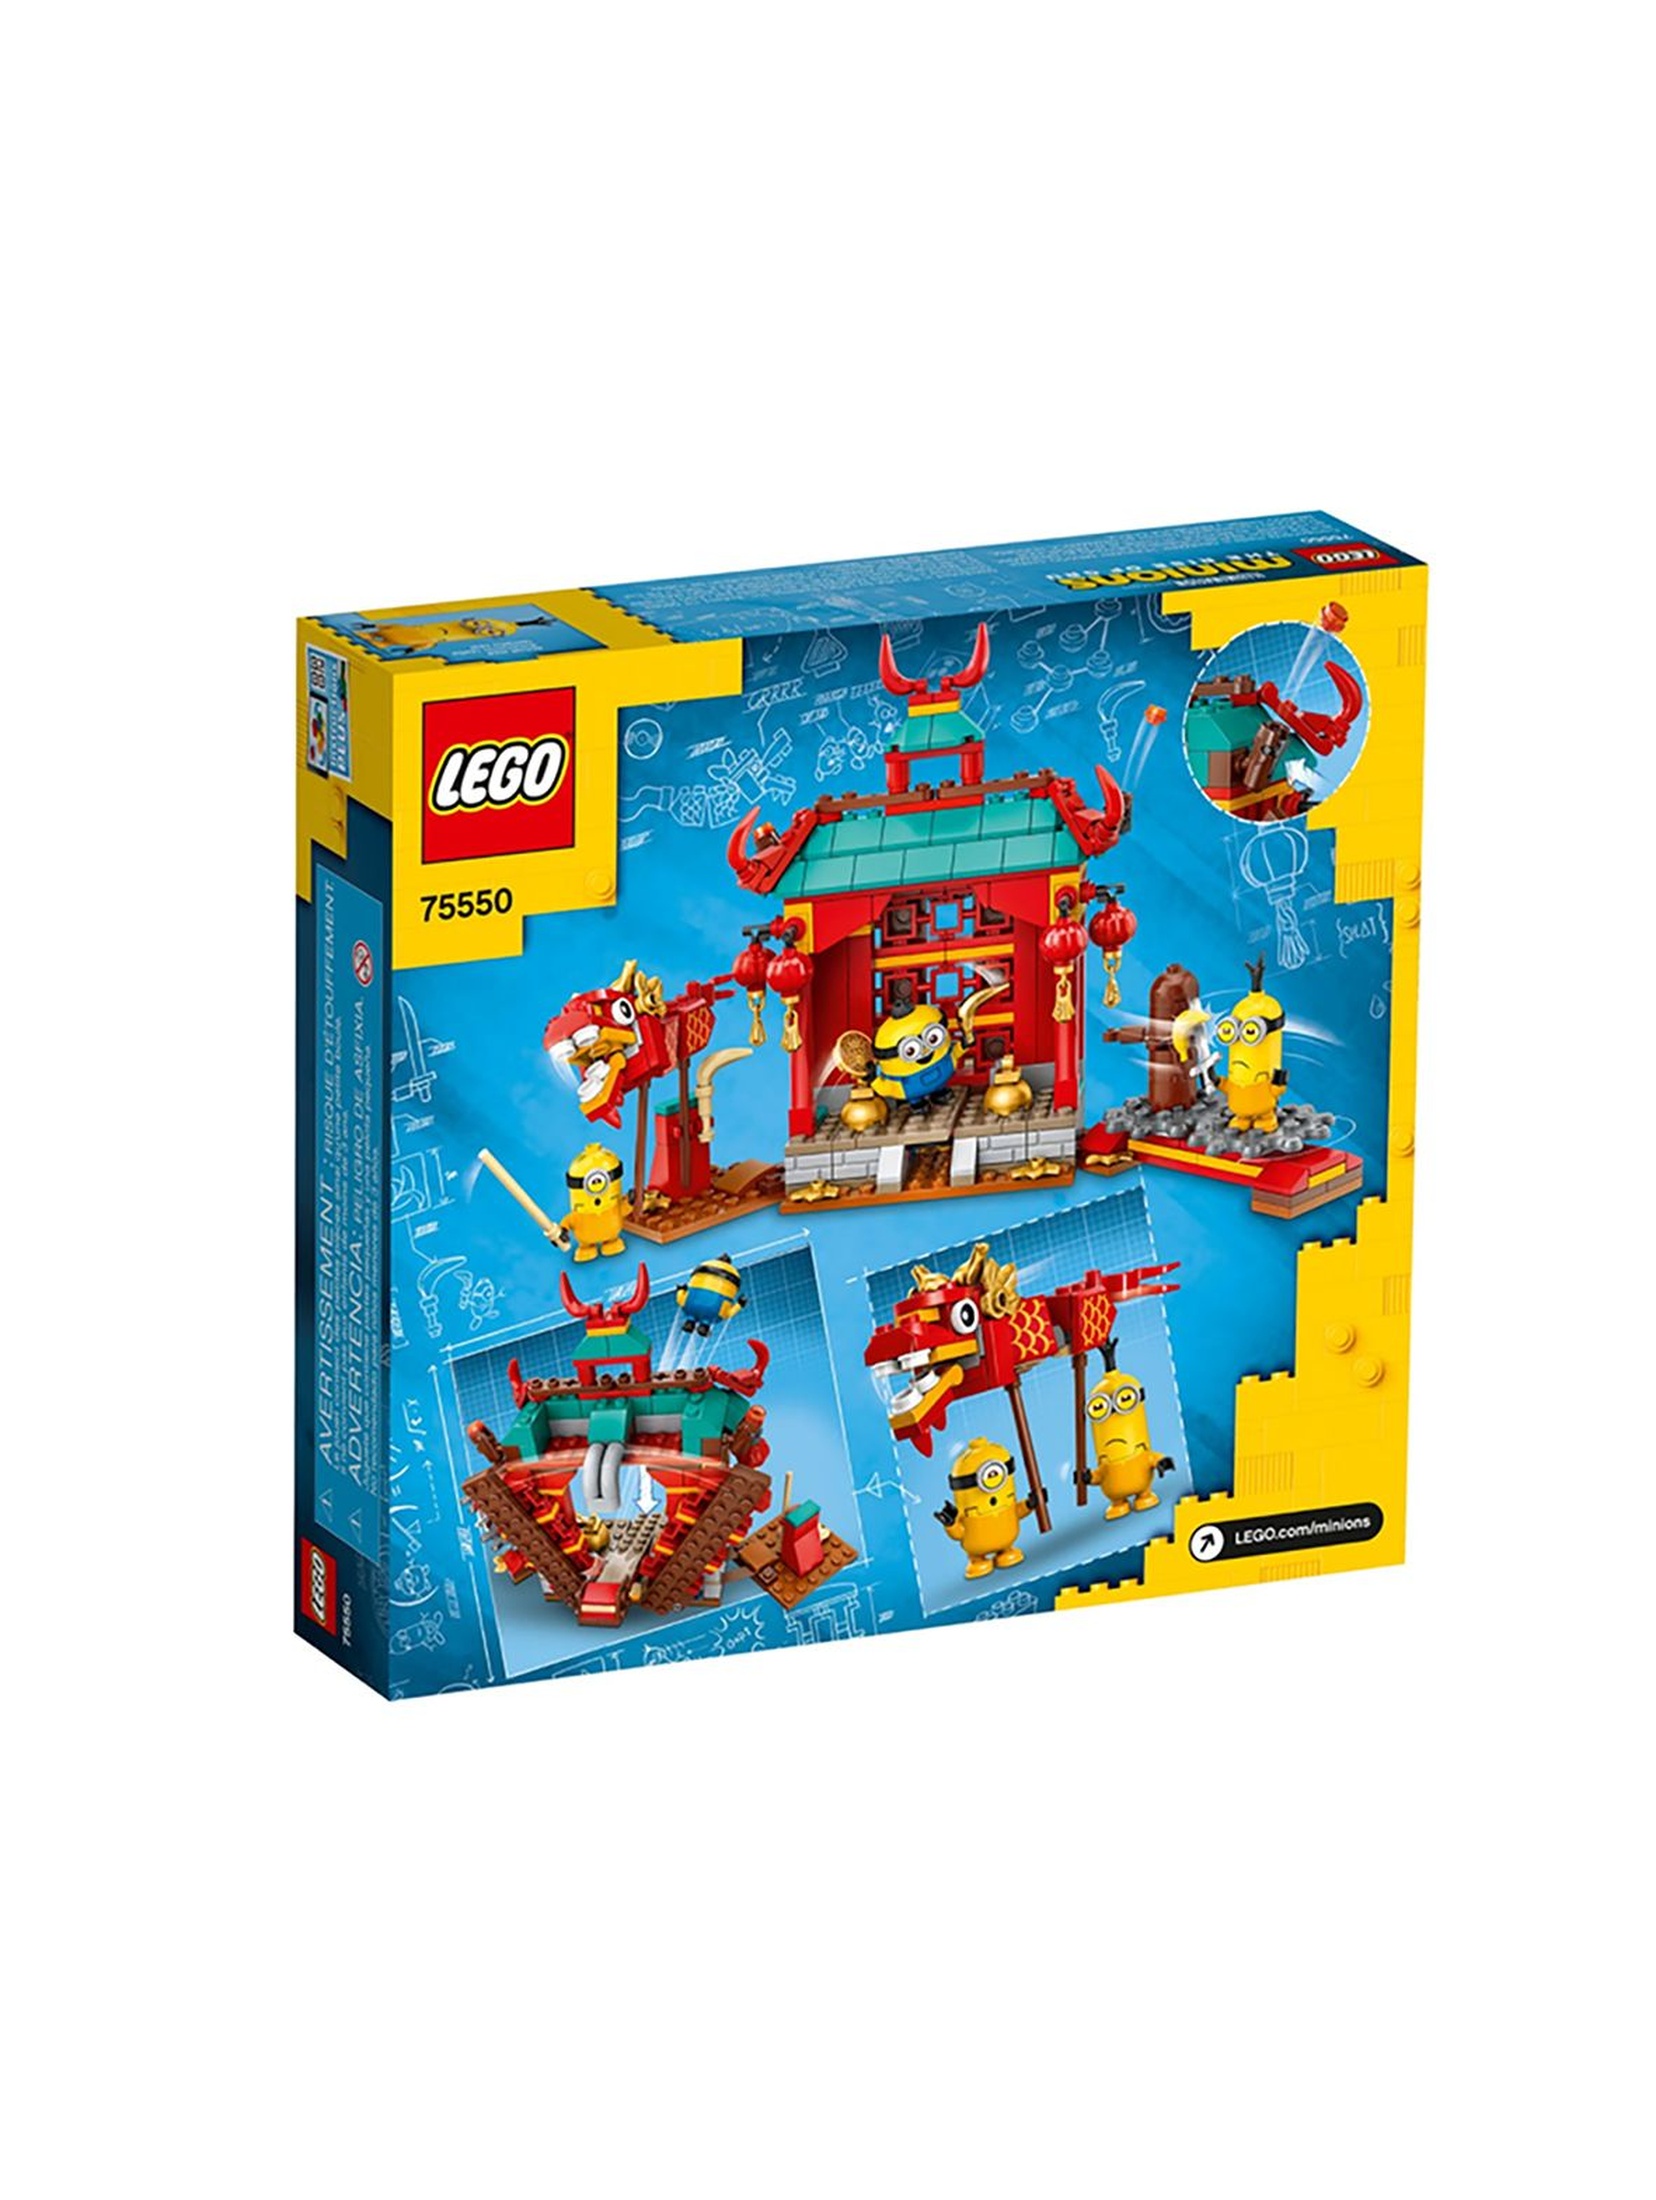 LEGO® Minions 75550 Minionki i walka kung-fu wiek 6+